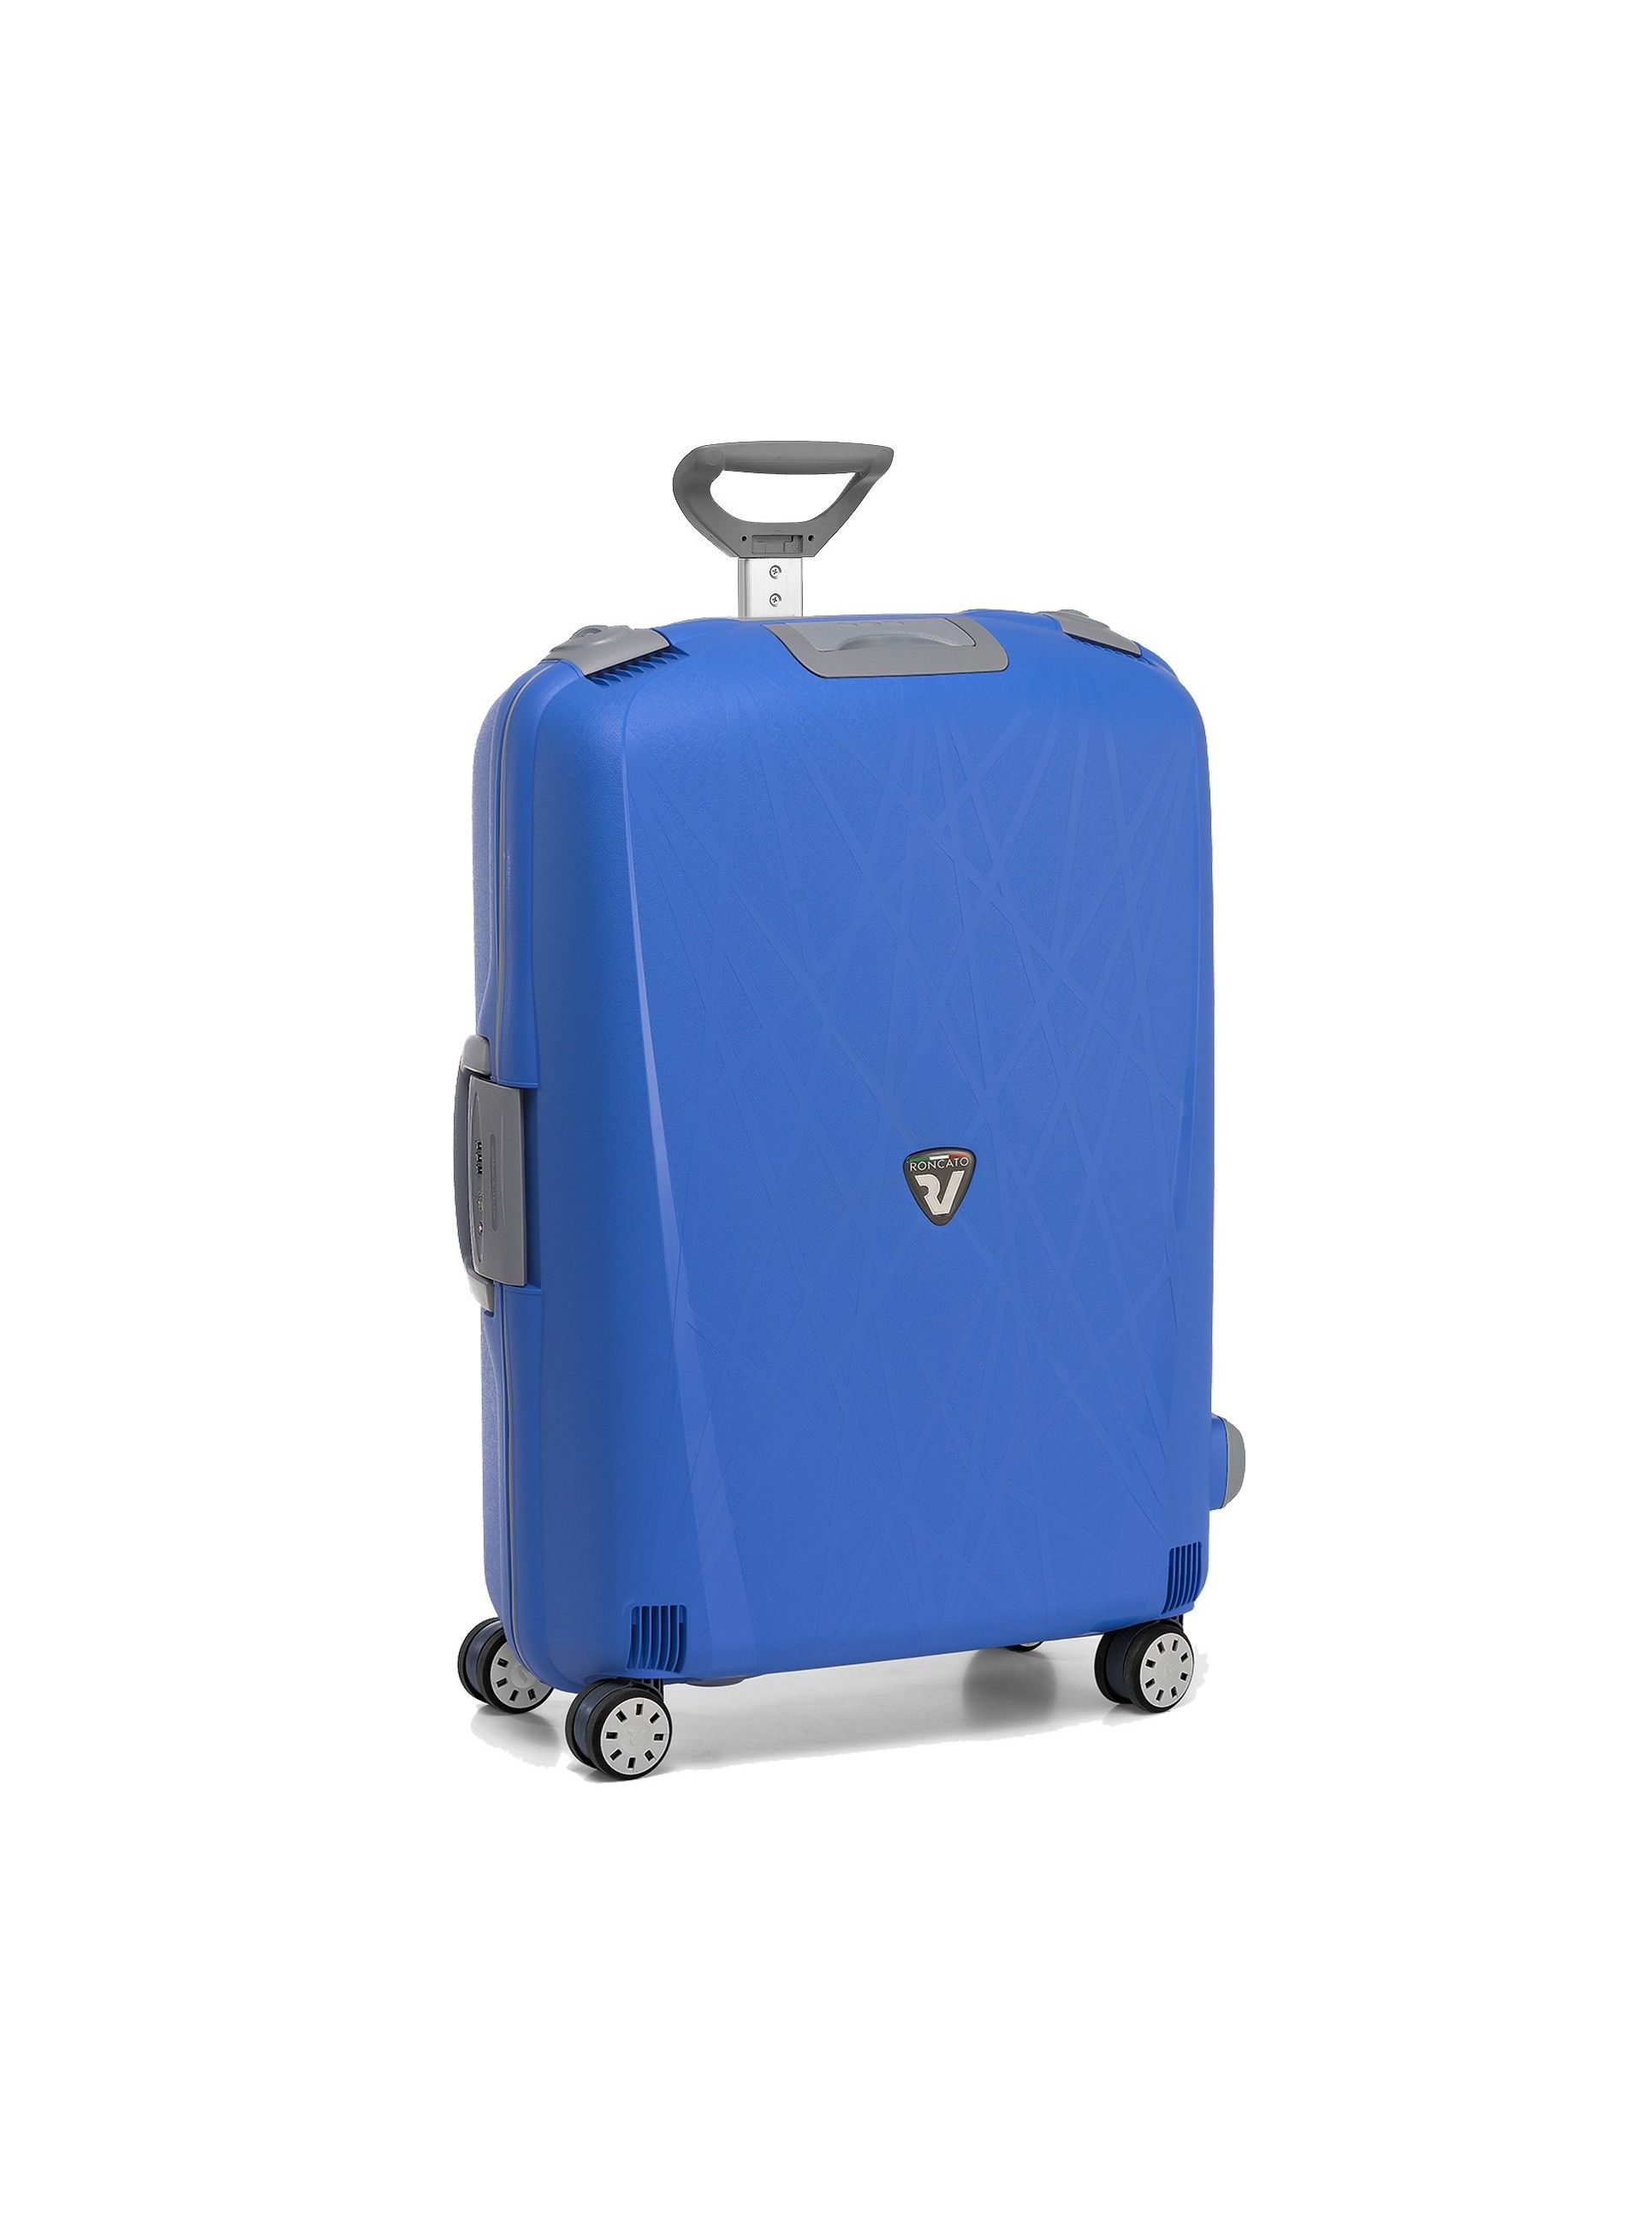 Велика валіза  Roncato Light 500711/18